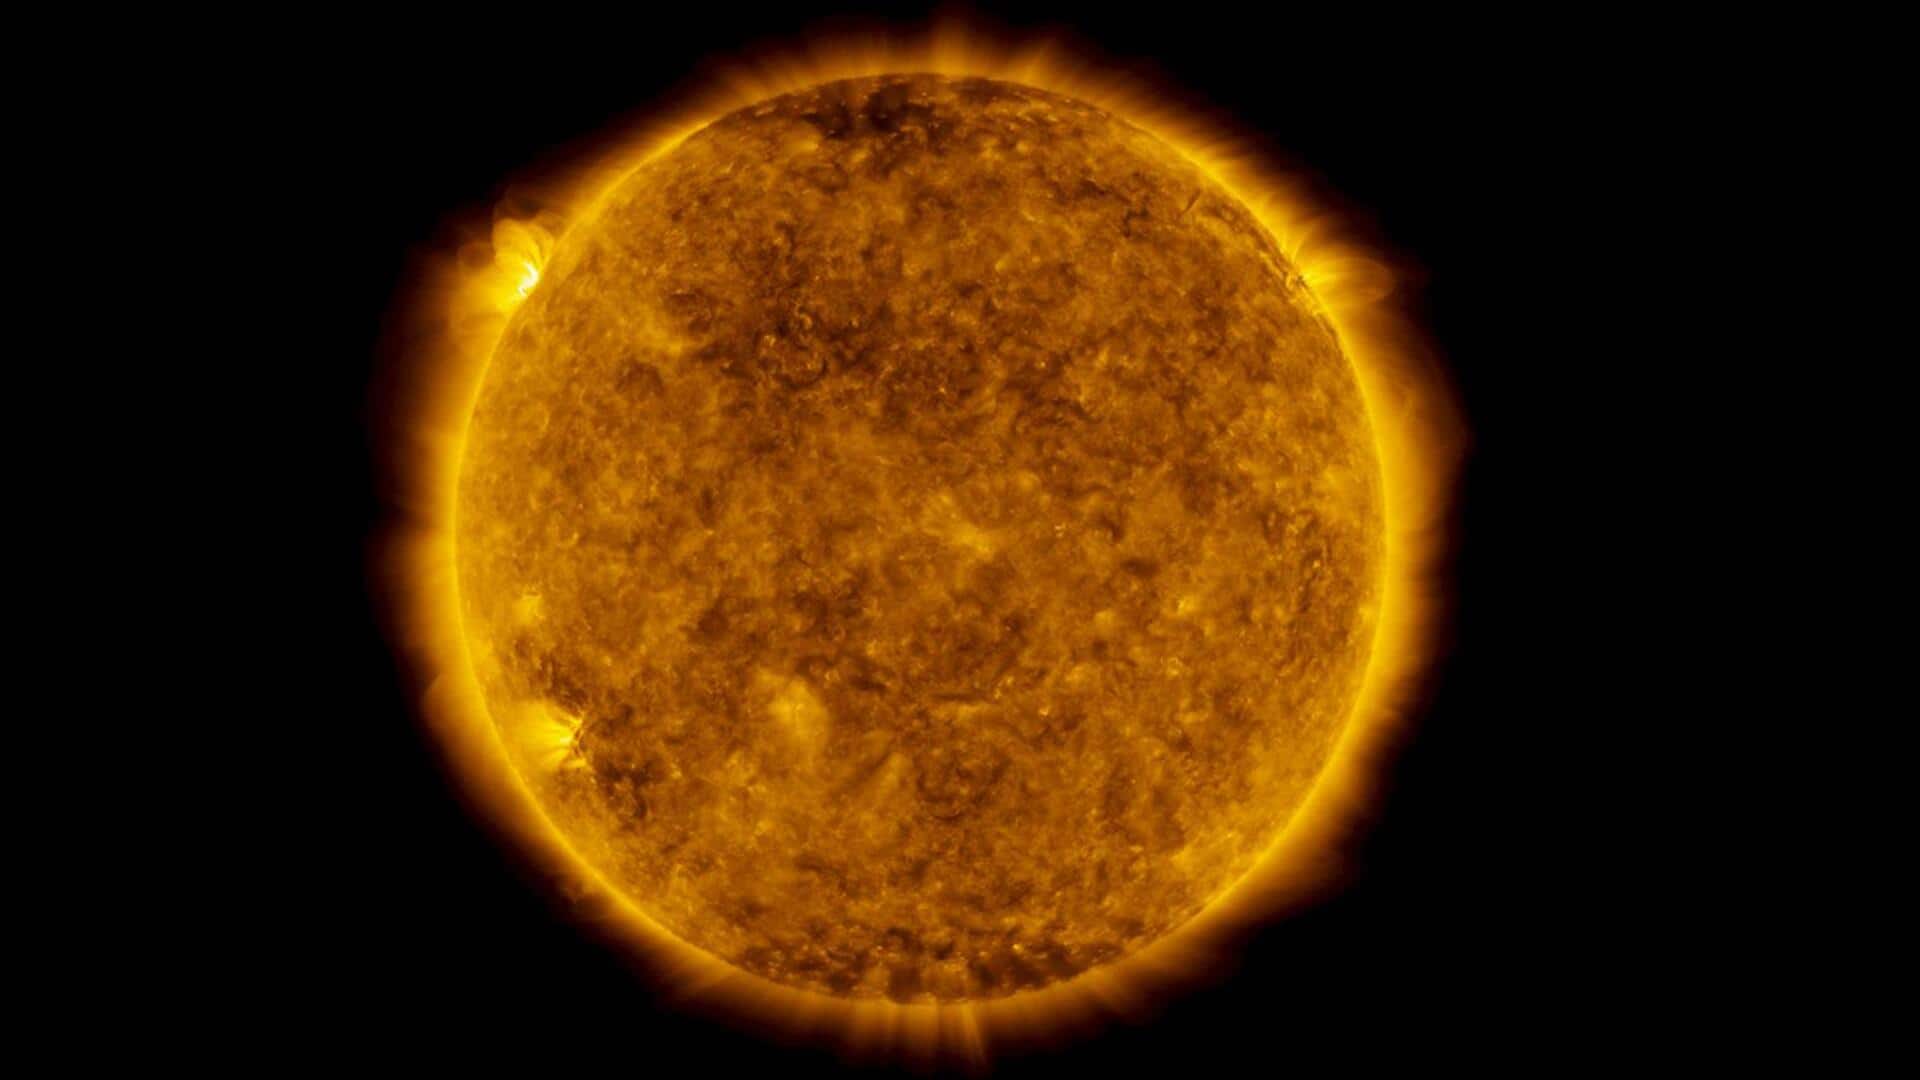 सूर्य पर रिकॉर्ड संख्या में दिखे सनस्पॉट, अंतरिक्ष मौसम को लेकर बढ़ी चिंता